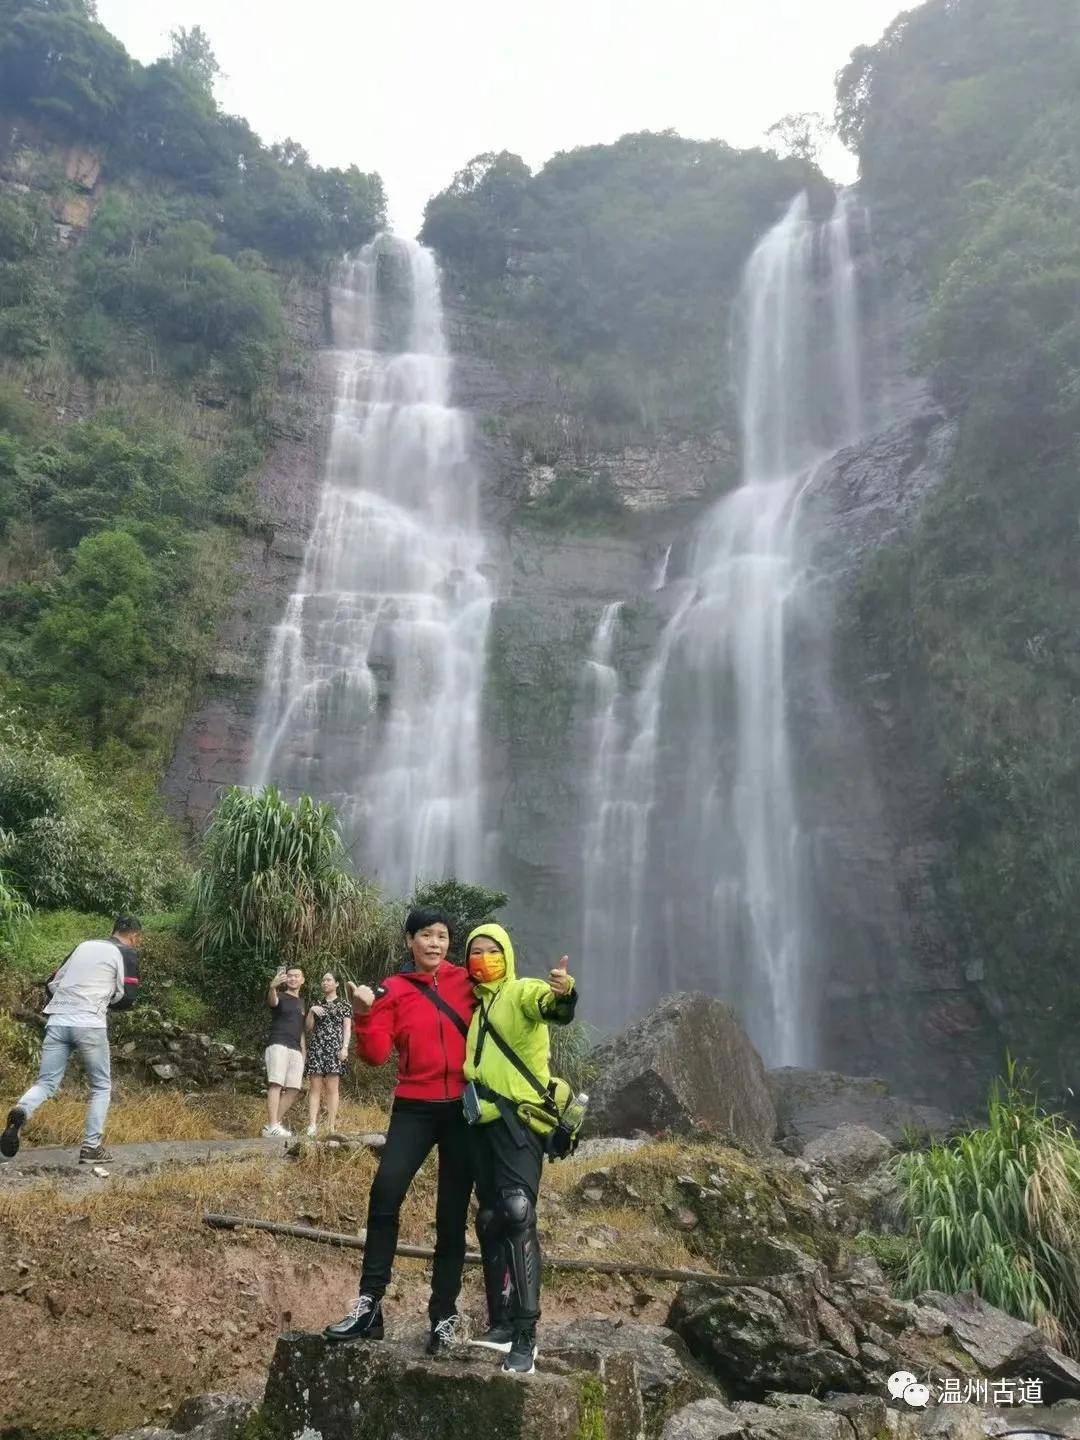 温州这条有名的瀑布,却少有游客,雨后水丰!秋日享清凉!